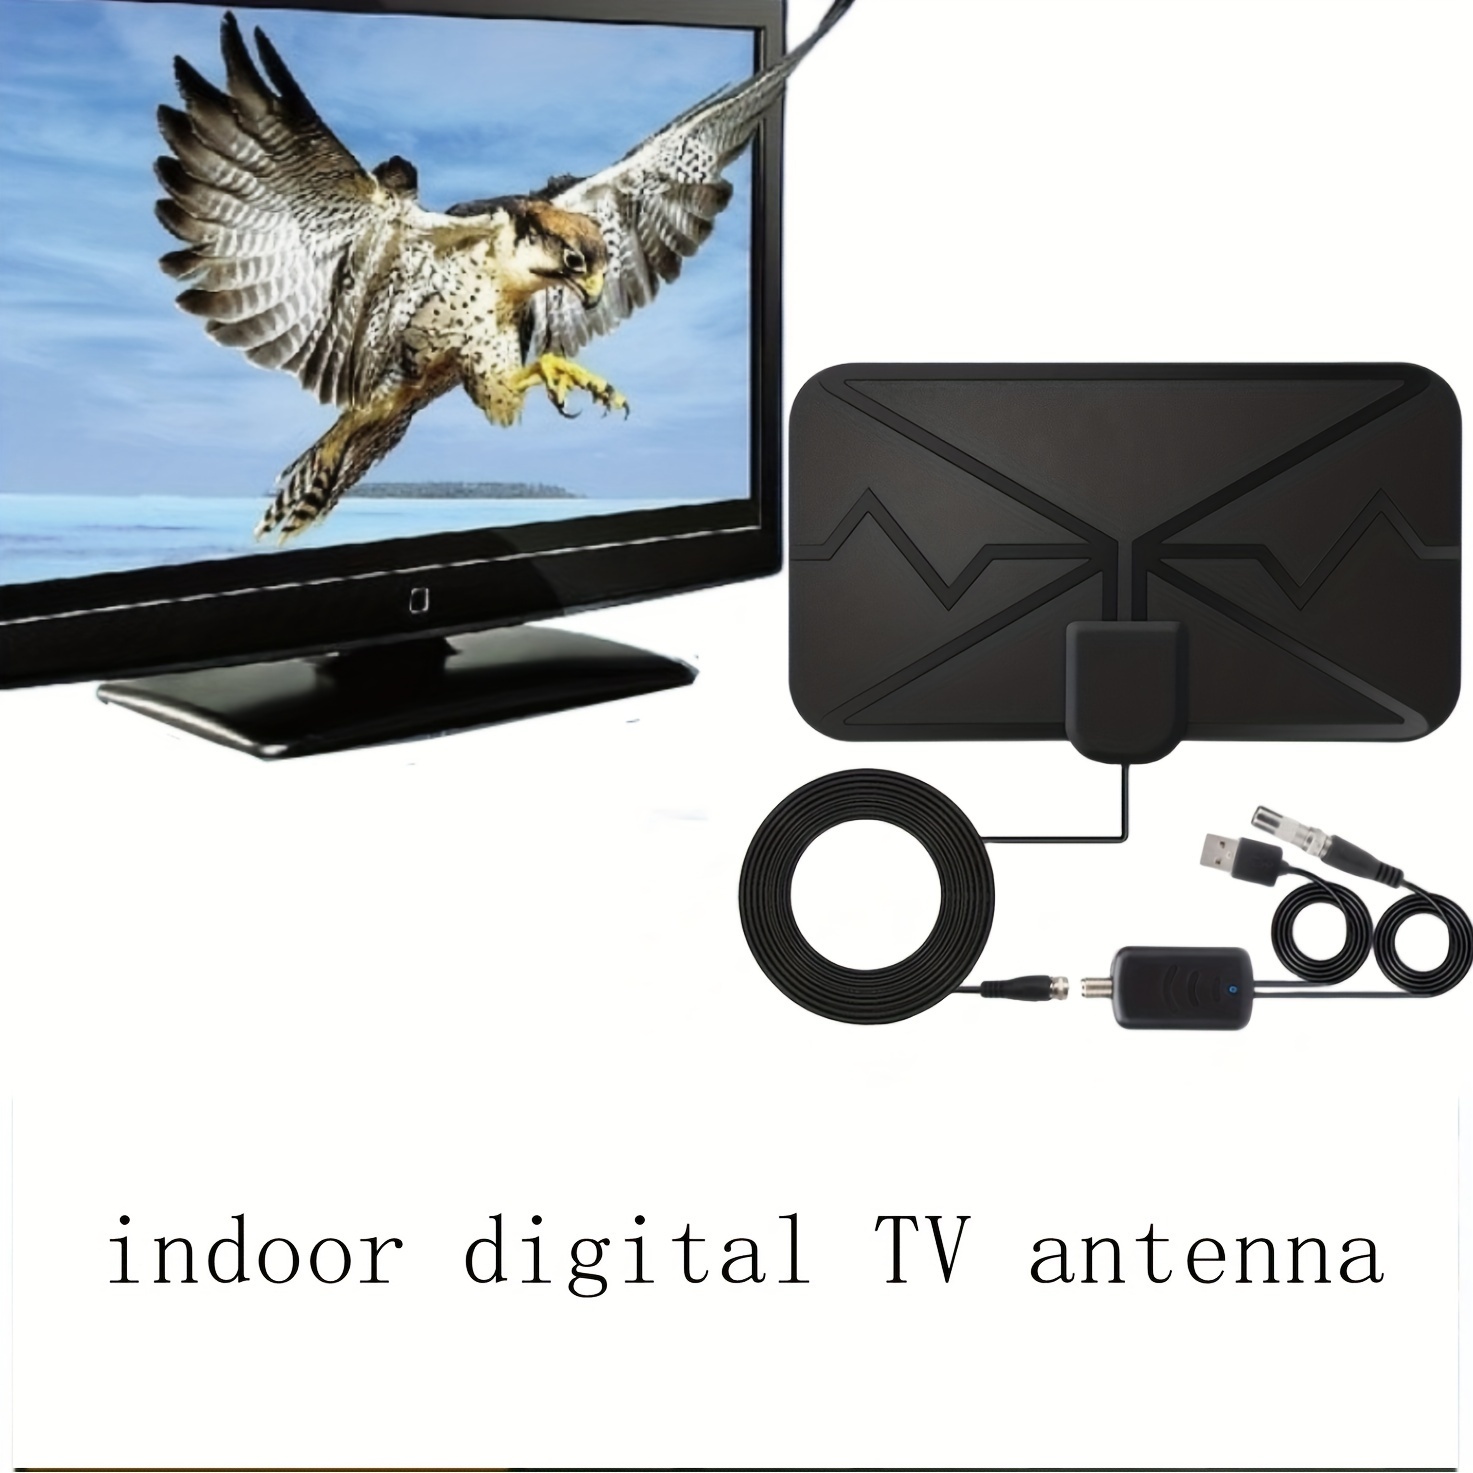 Antena digital de 580 millas de rango de TV para televisores 4K 1080p -  Antena HDTV interior para televisores inteligentes y antiguos - Potente